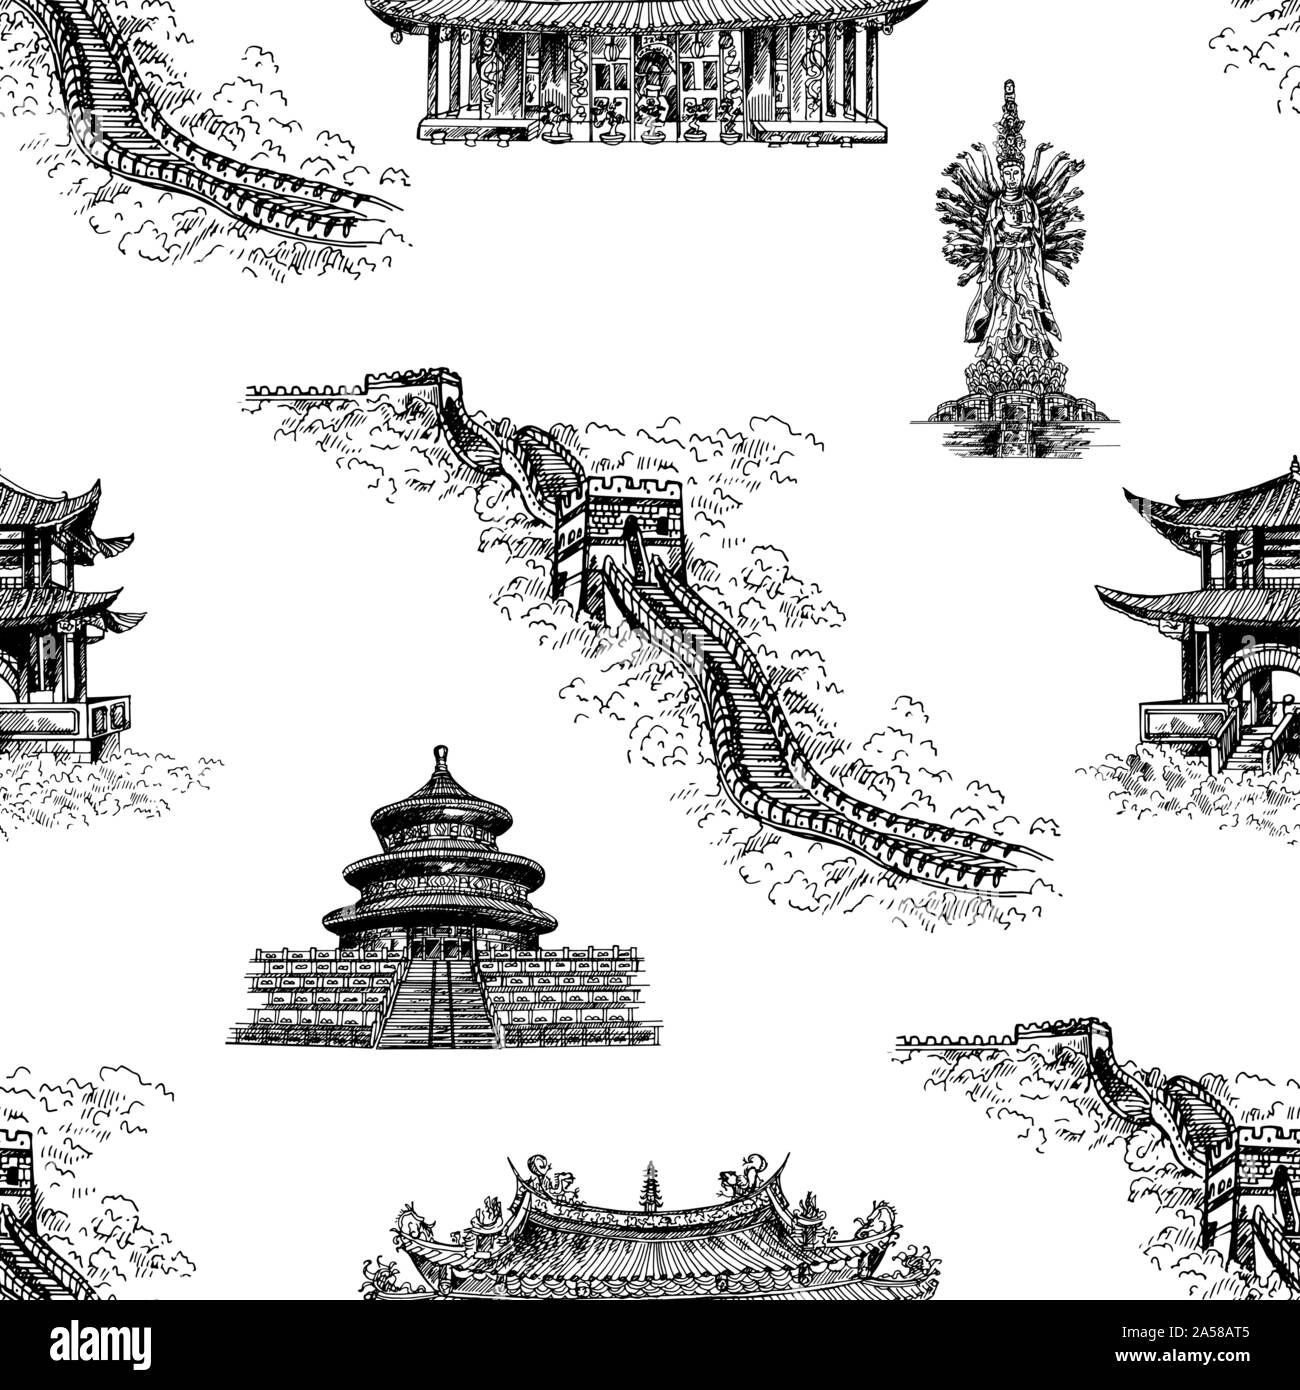 Motif de la main transparente style croquis Chine objets connexes isolé sur fond blanc. Vector illustration. Illustration de Vecteur